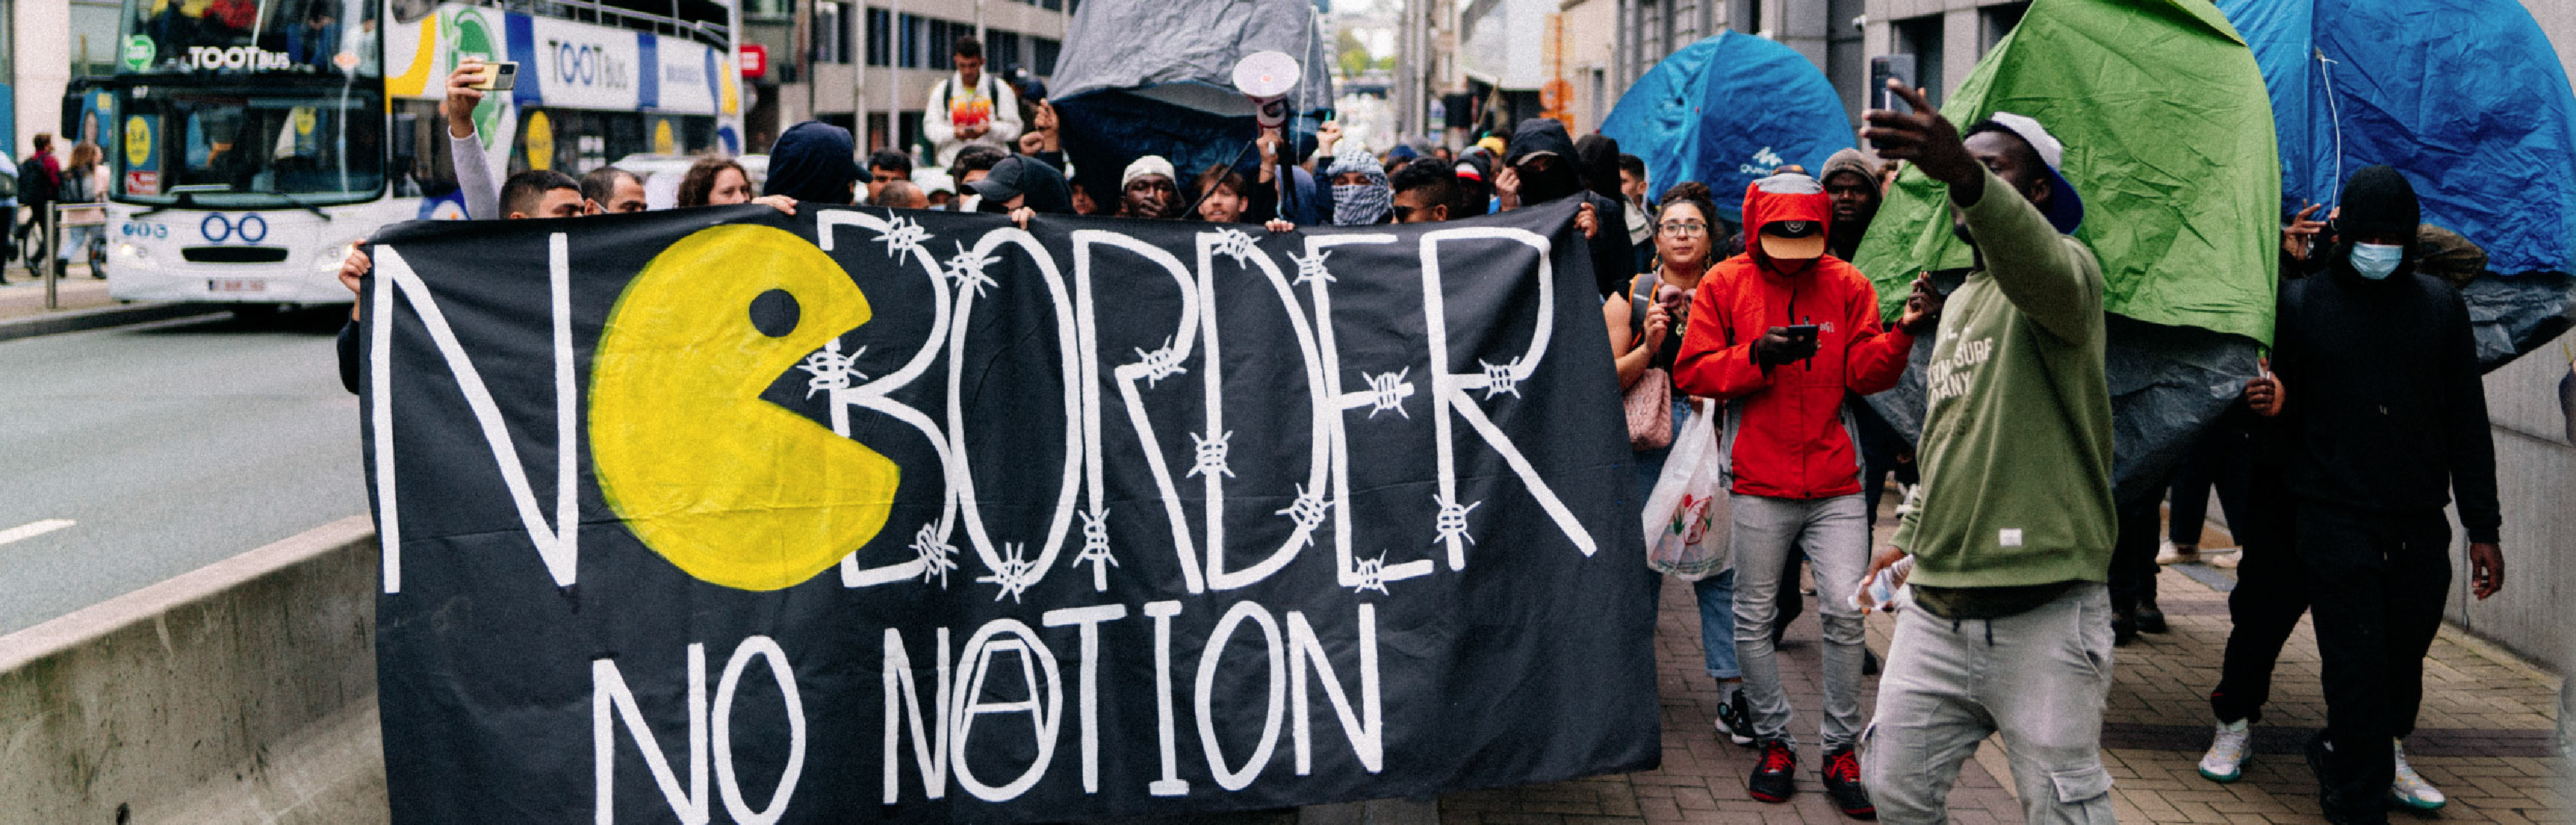 Asielzoekers en activisten die het Brusselse pand aan de Wetstraat 91 bezetten onder de naam 'Toc Toc Nicole', lopen met tentjes door de Wetstraat, om even verderop een tentenkamp neer te zetten, als protest tegen de opzettelijk gecreëerde opvangcrisis. Op het spandoek staat 'No border, no nation'